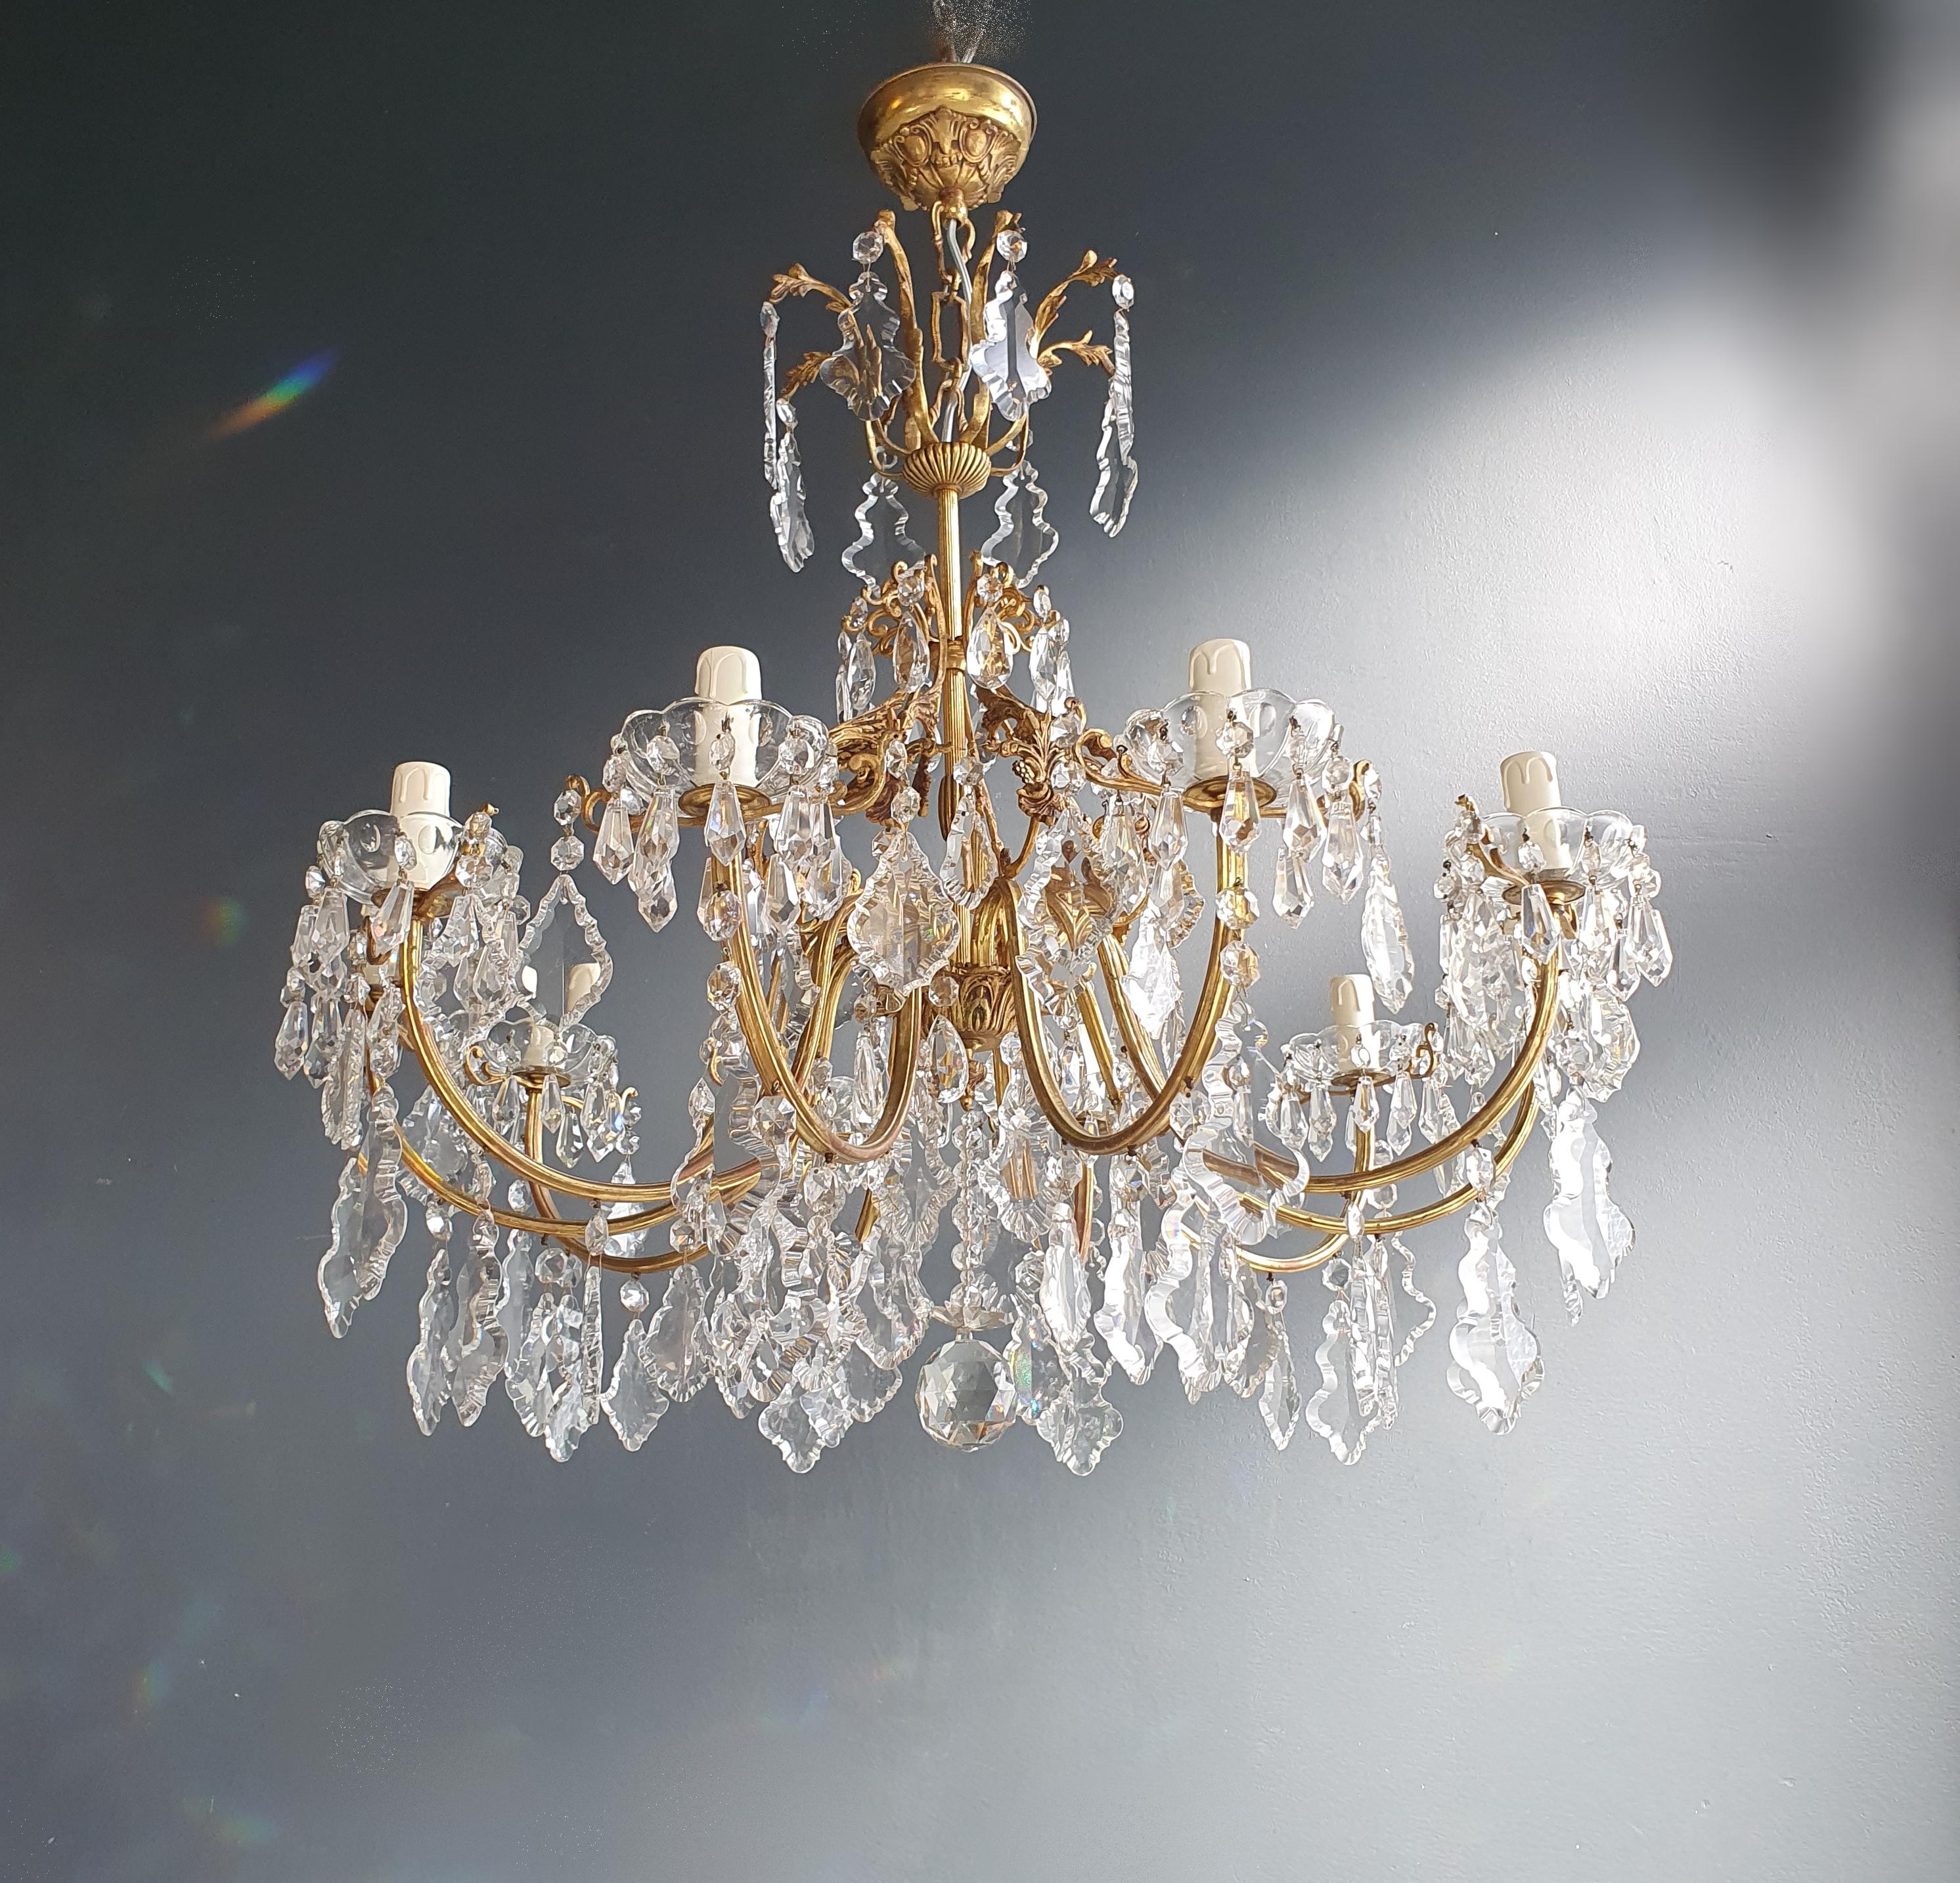 Brass Crystal Chandelier Antique Ceiling Lamp Lustre Art Nouveau Lamp 5